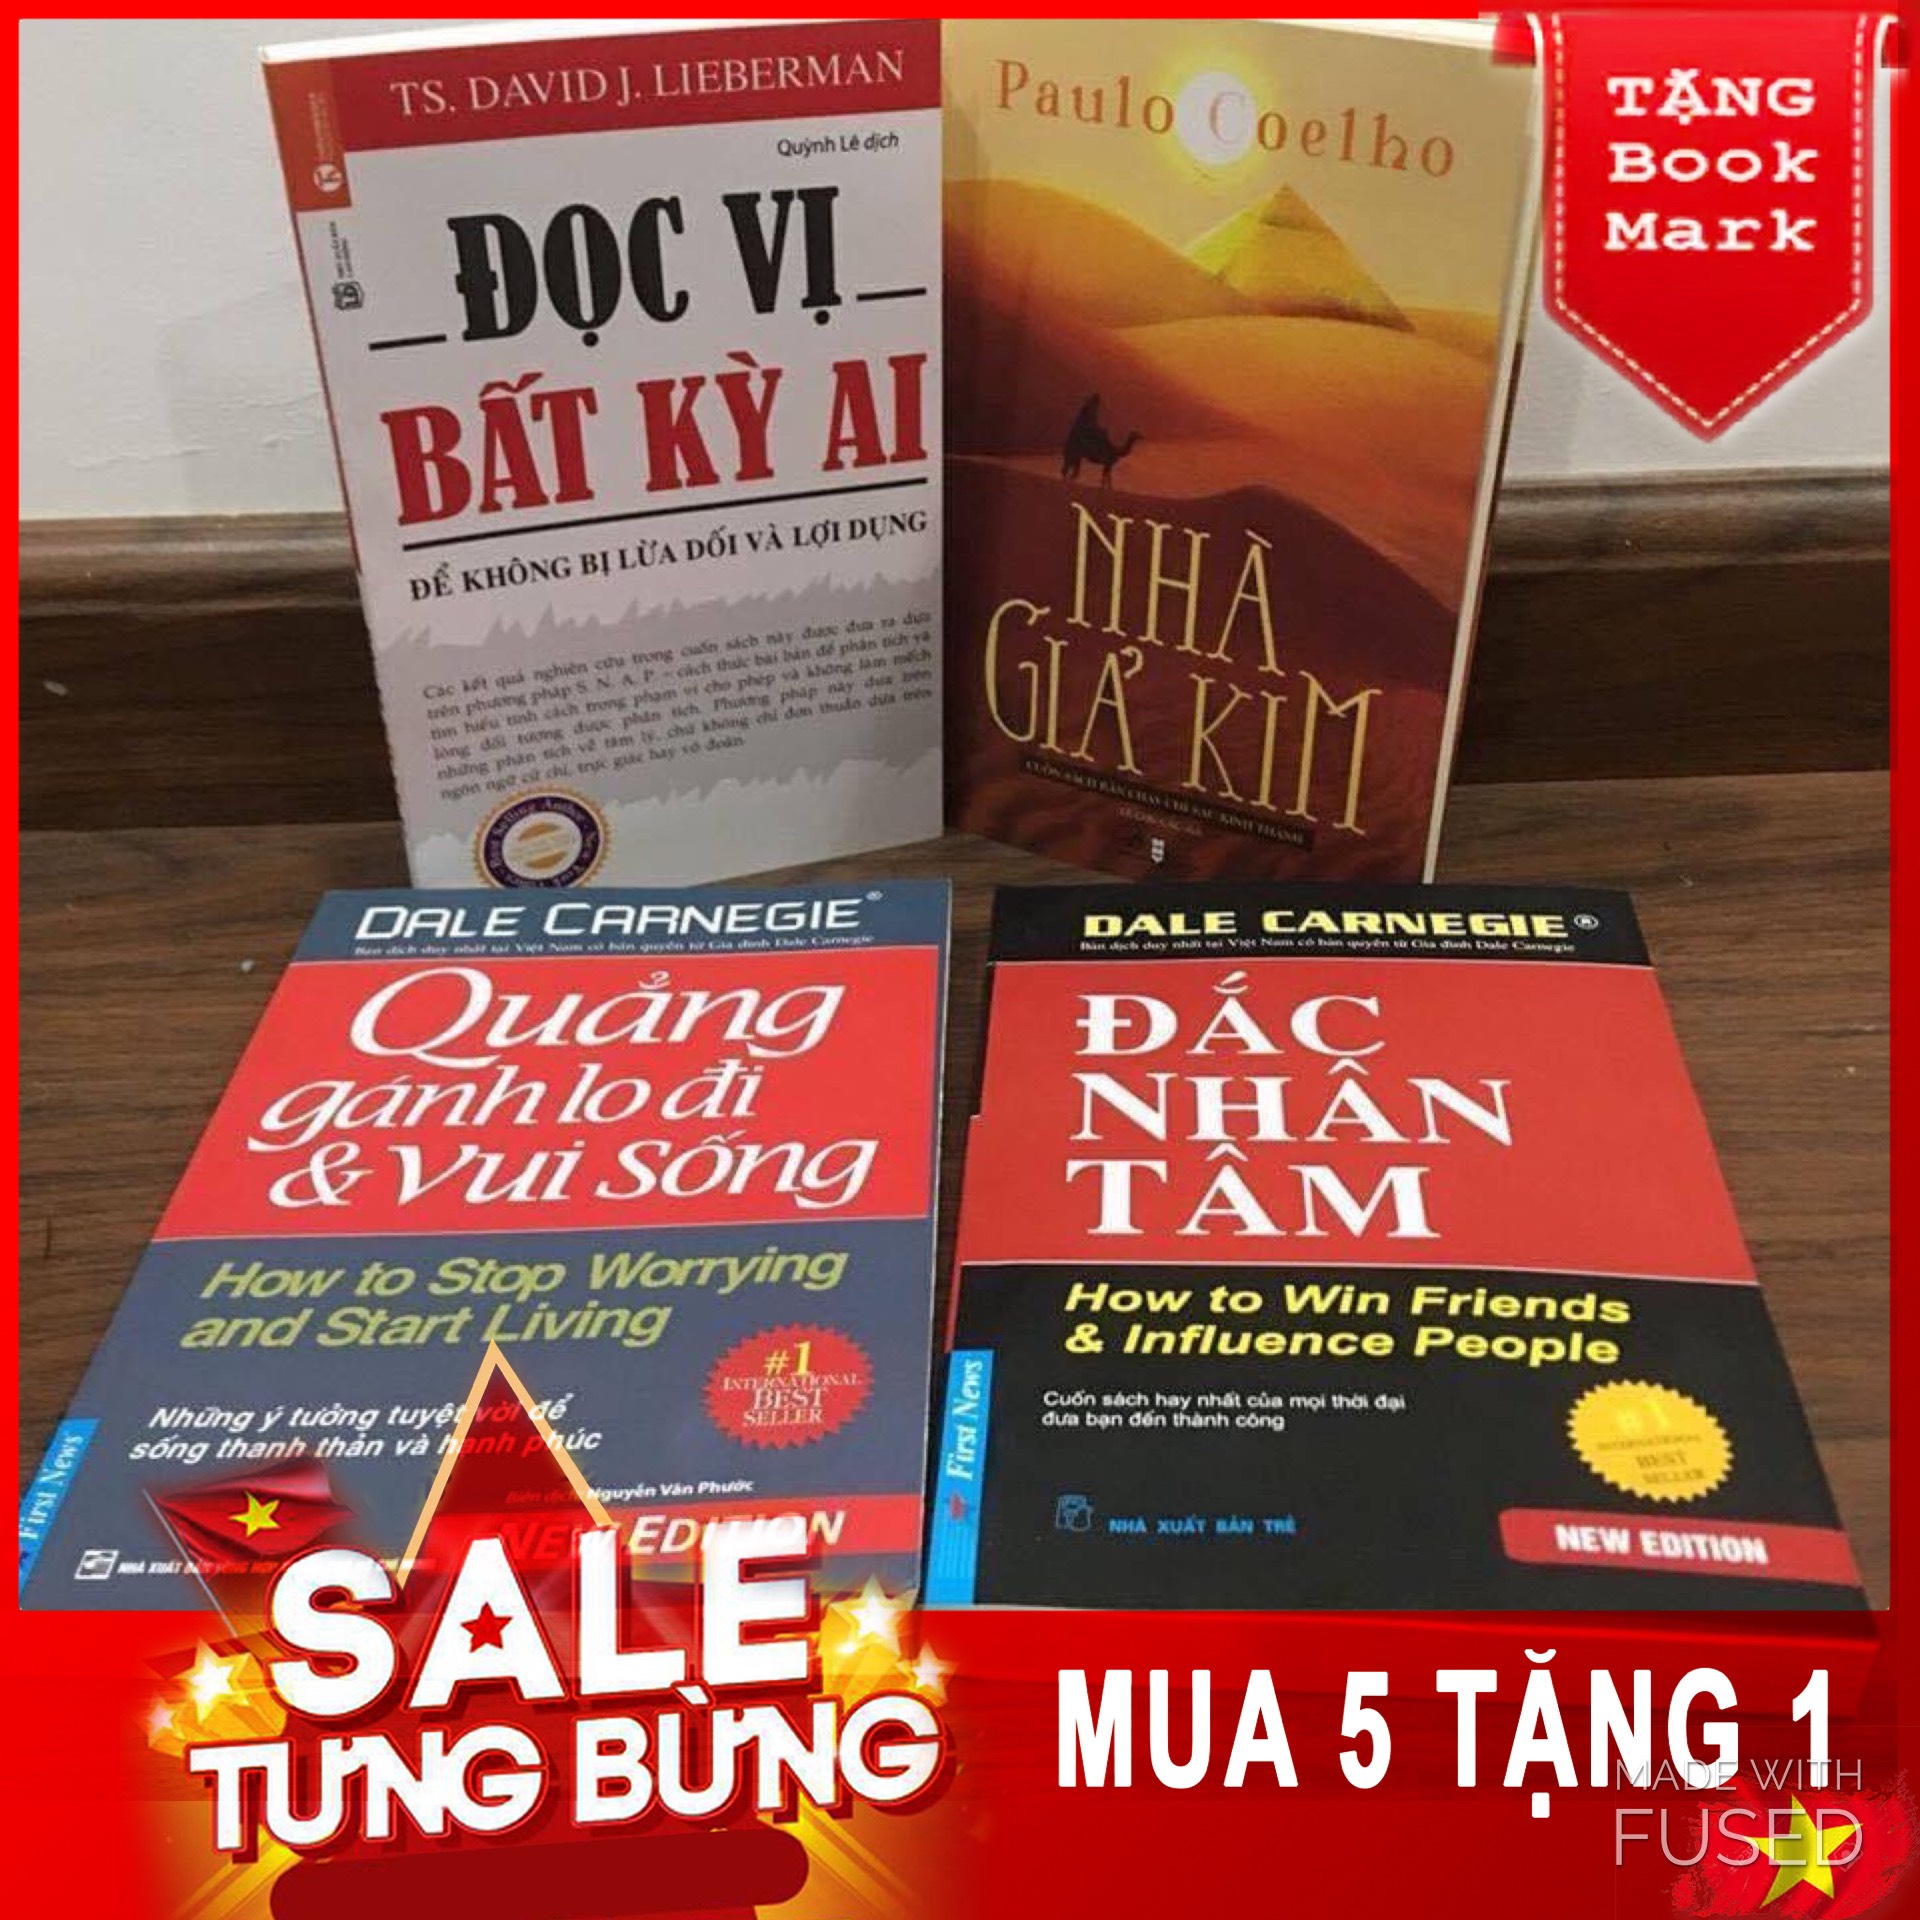 Combo 4 sách Đọc vị+ nhà giả kim+Đac nhan tam+ Quang gánh